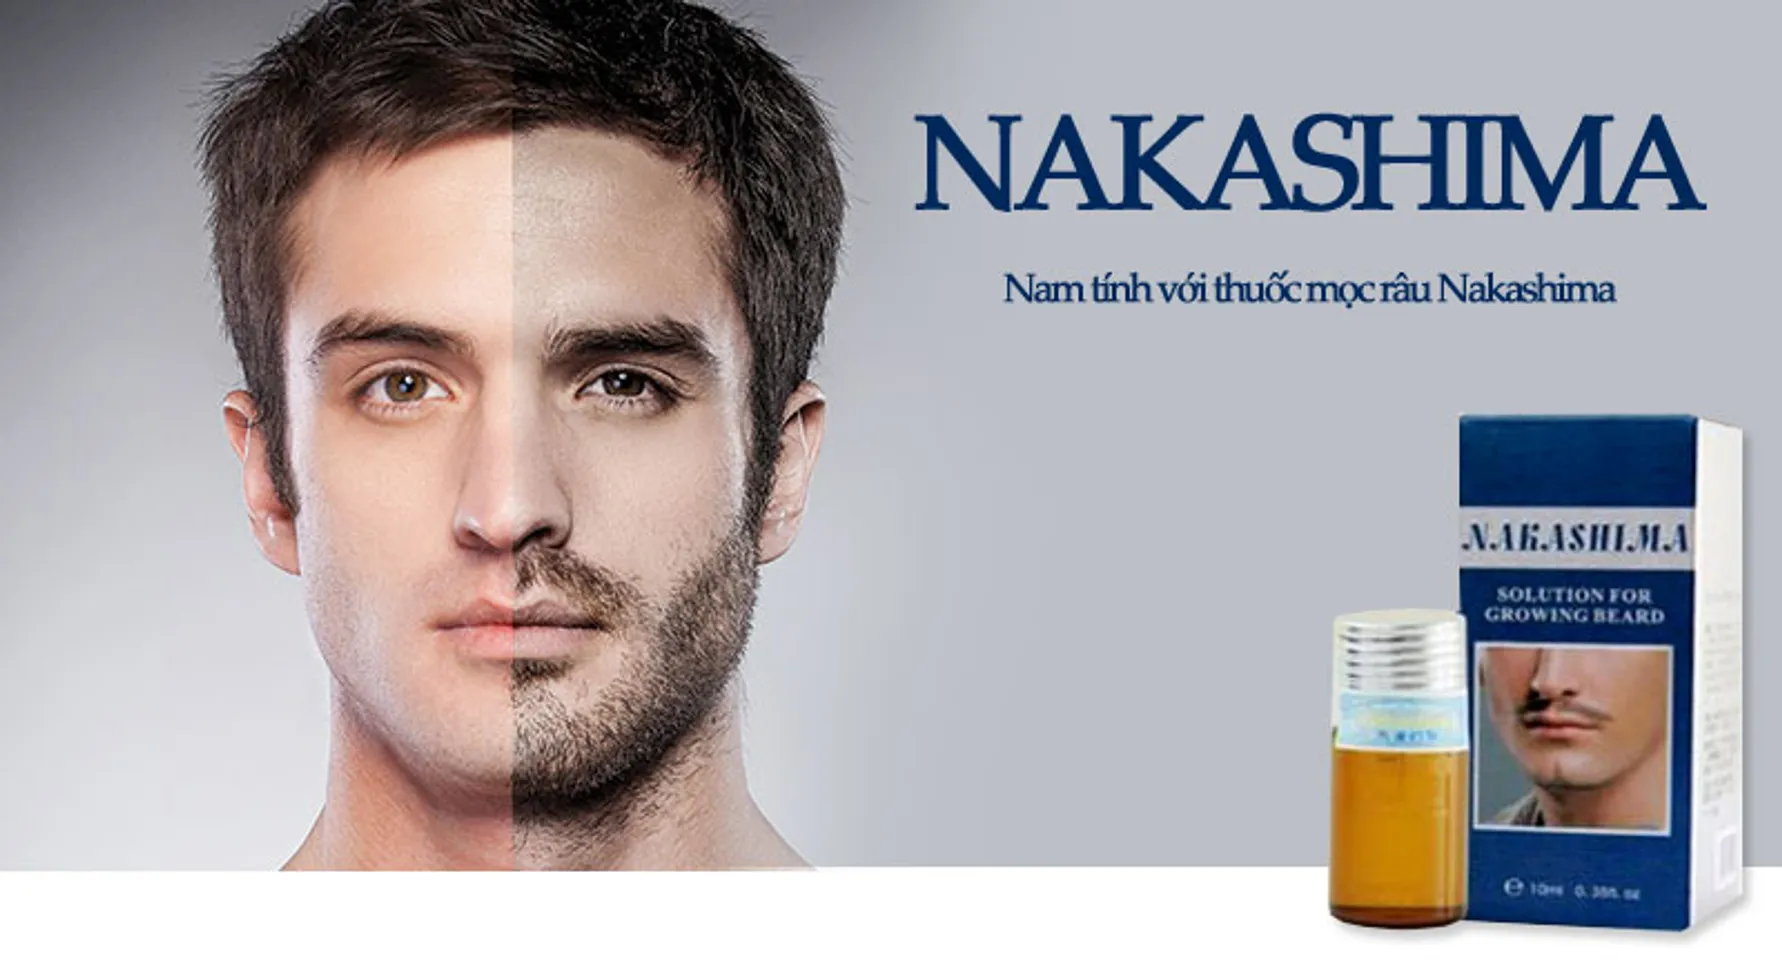 Nakashima có tác dụng hầu hết những vùng da có xuất hiện lỗ chân lông hoặc thưa lỗ chân lông